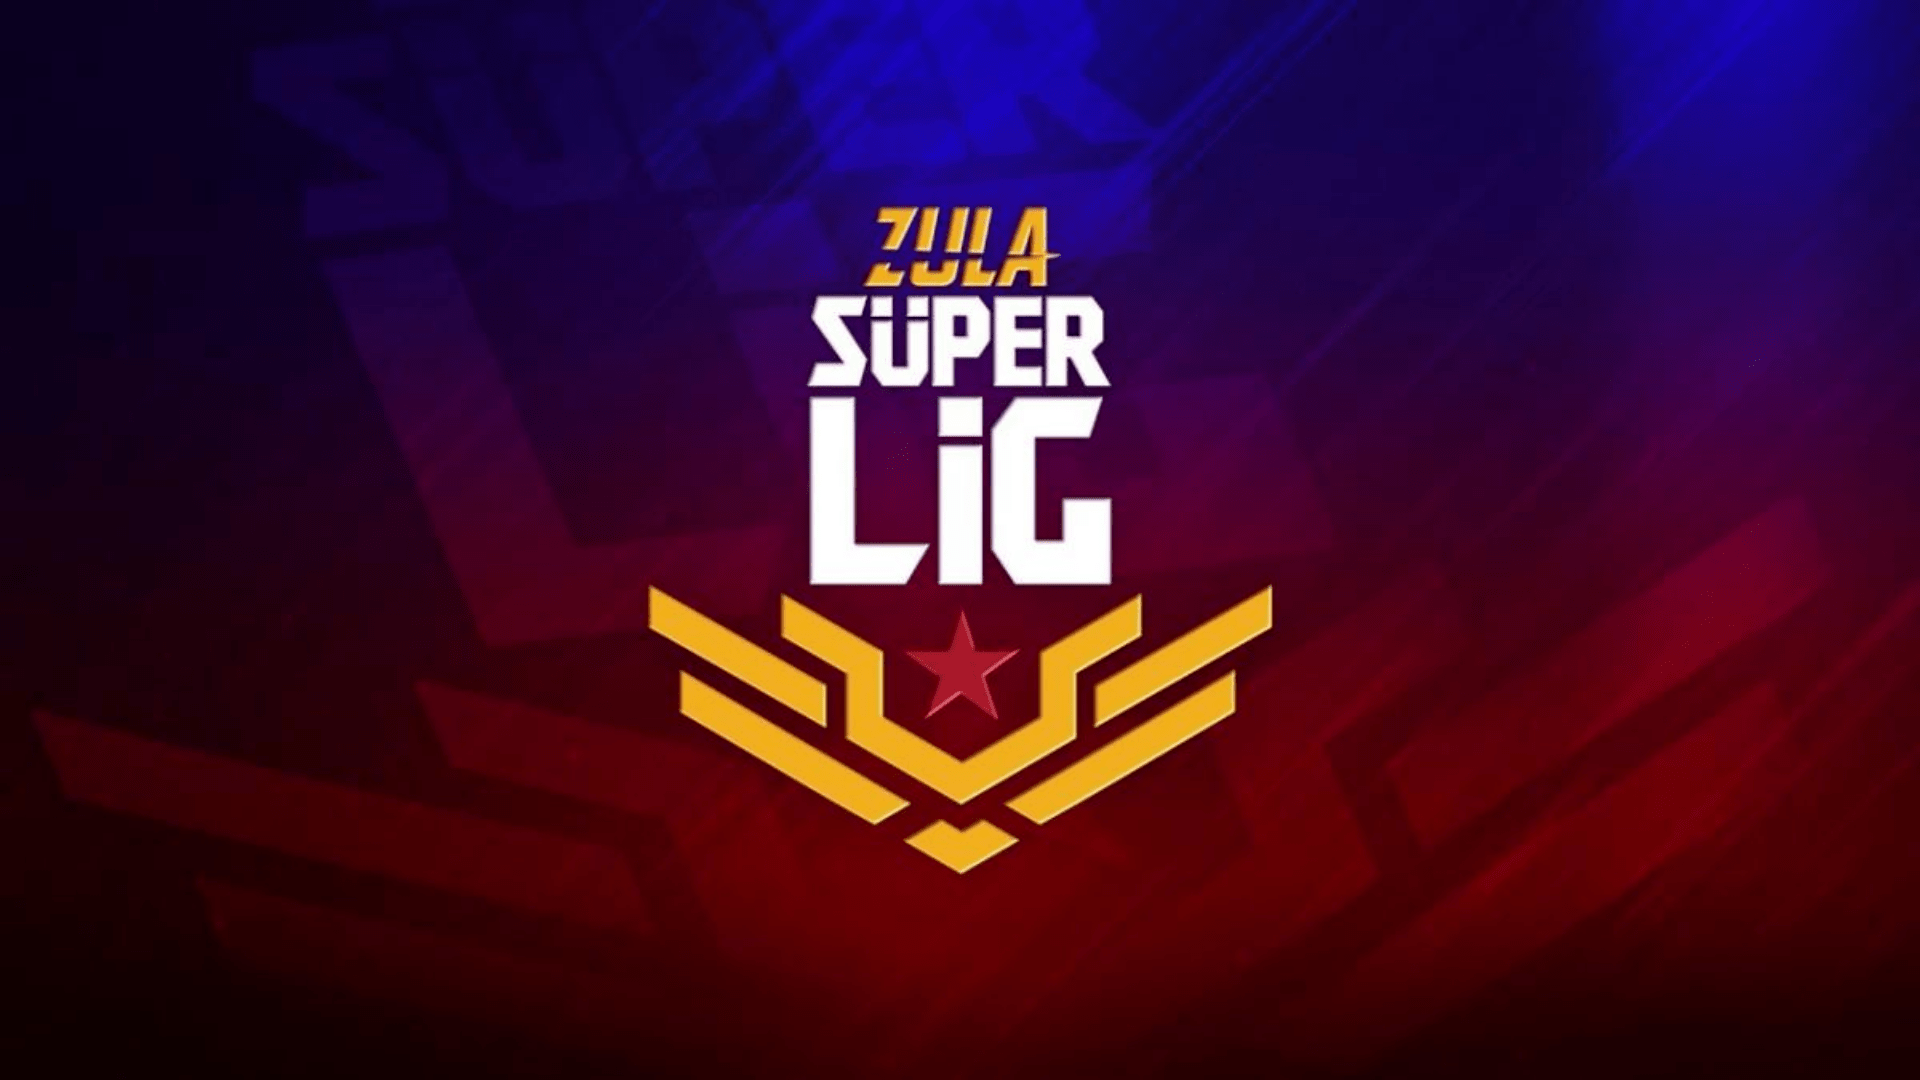 Zula Süper Lig 7. Sezon 5. Hafta 1. Gün karşılaşmaları başlıyor! – Güncelleniyor